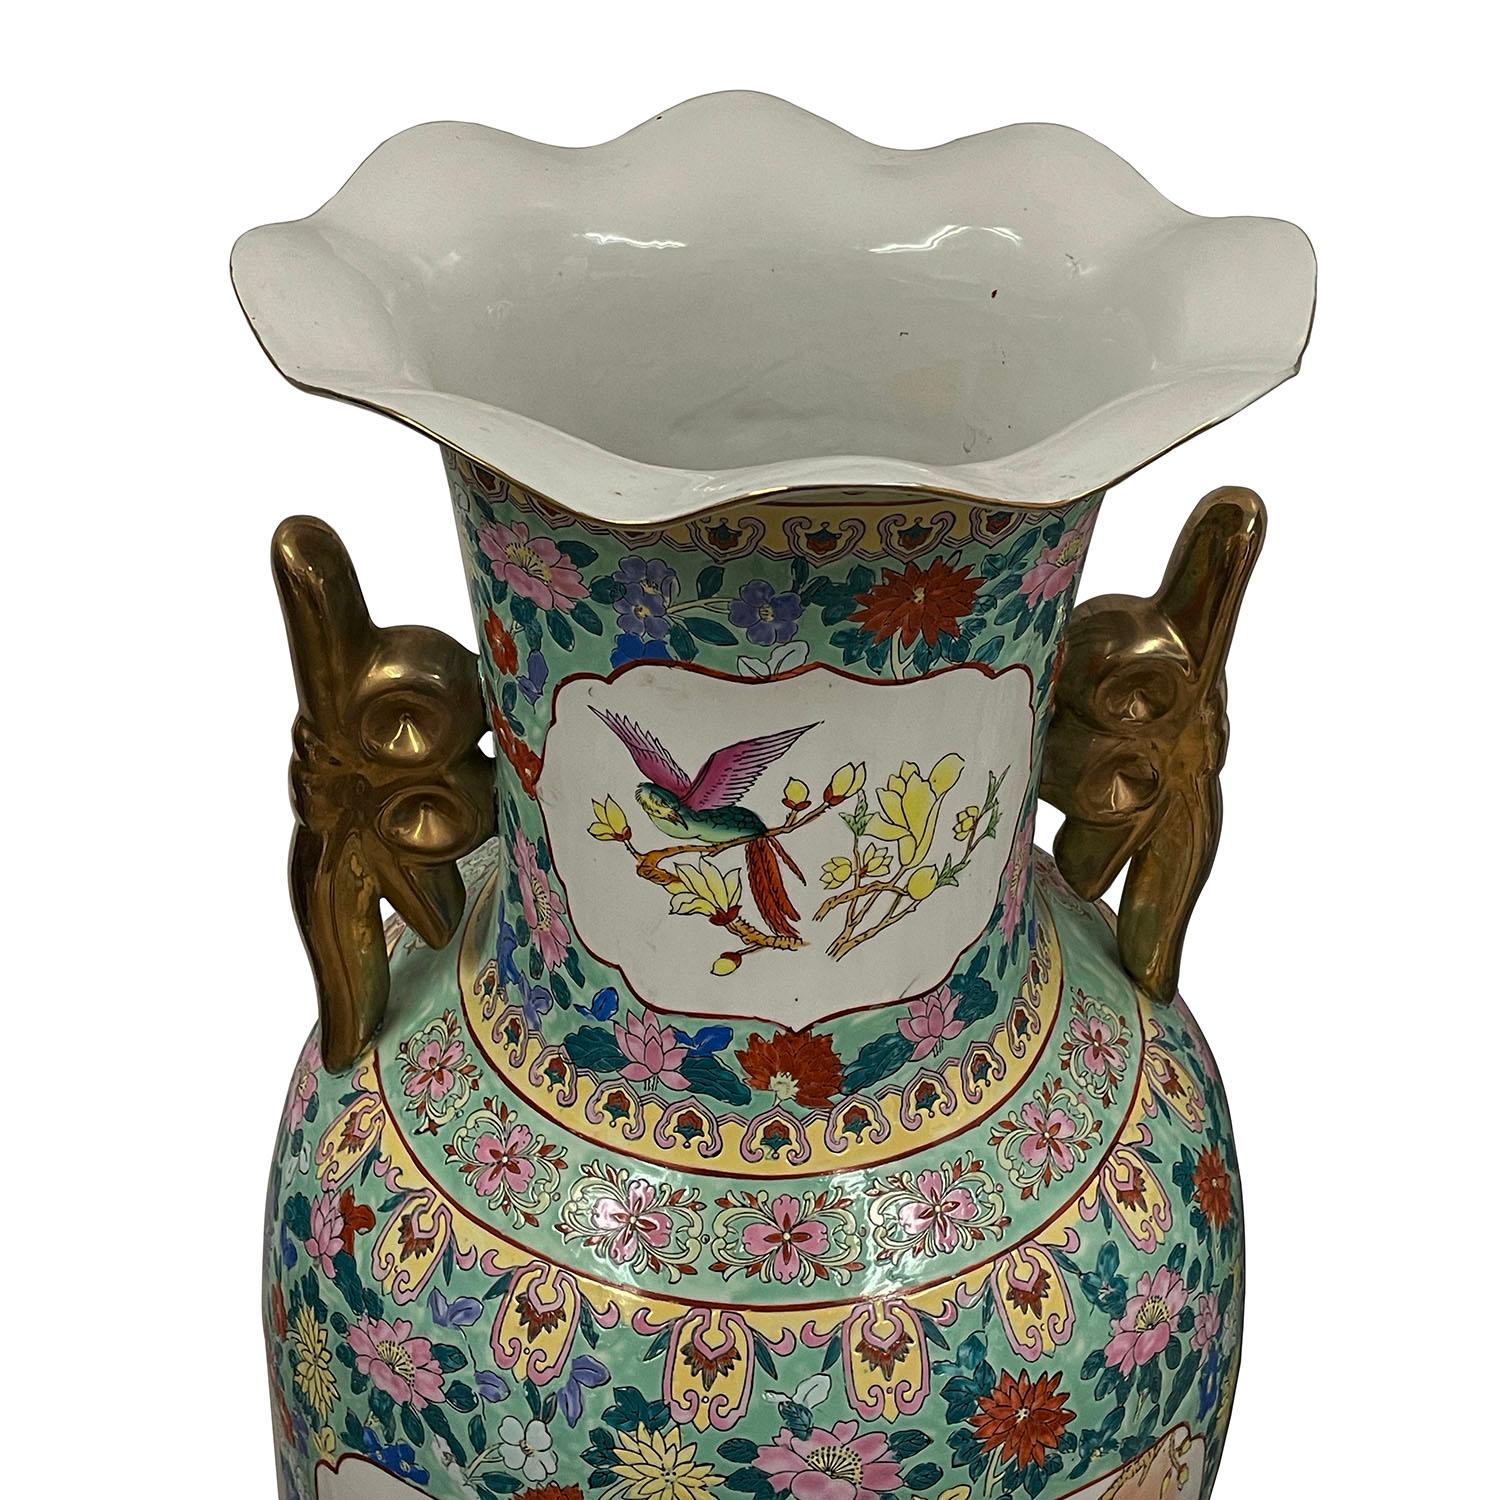 Regardez cette paire de vases rares et magnifiques en porcelaine de famille rose ancienne chinoise. Ils ont été fabriqués et peints à la main. Il est orné de peintures traditionnelles chinoises à la main représentant de beaux oiseaux et des motifs